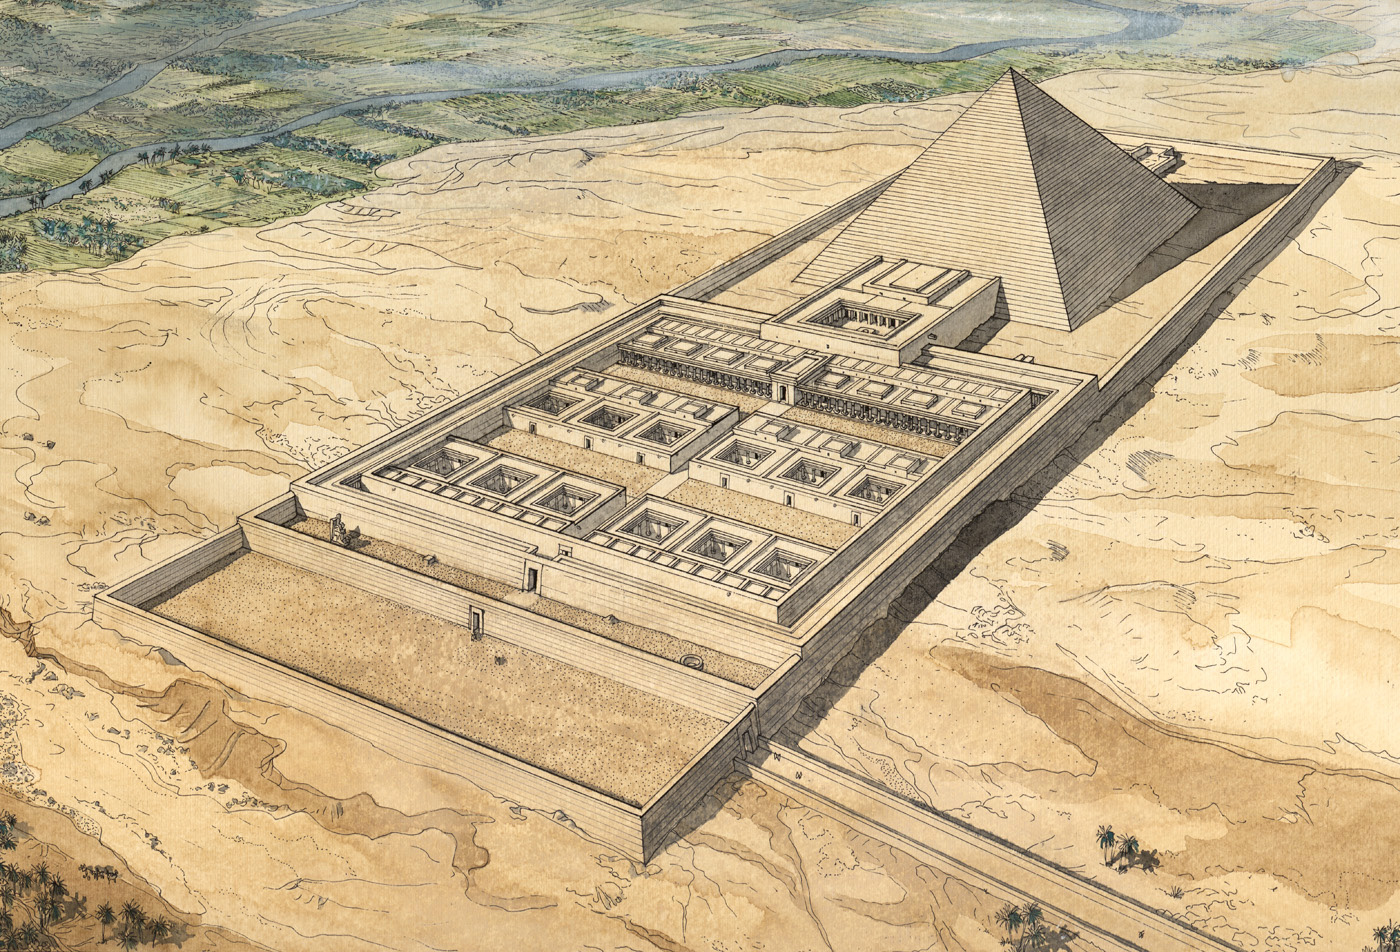 Hawara pyramid and labyrinth, Egypt